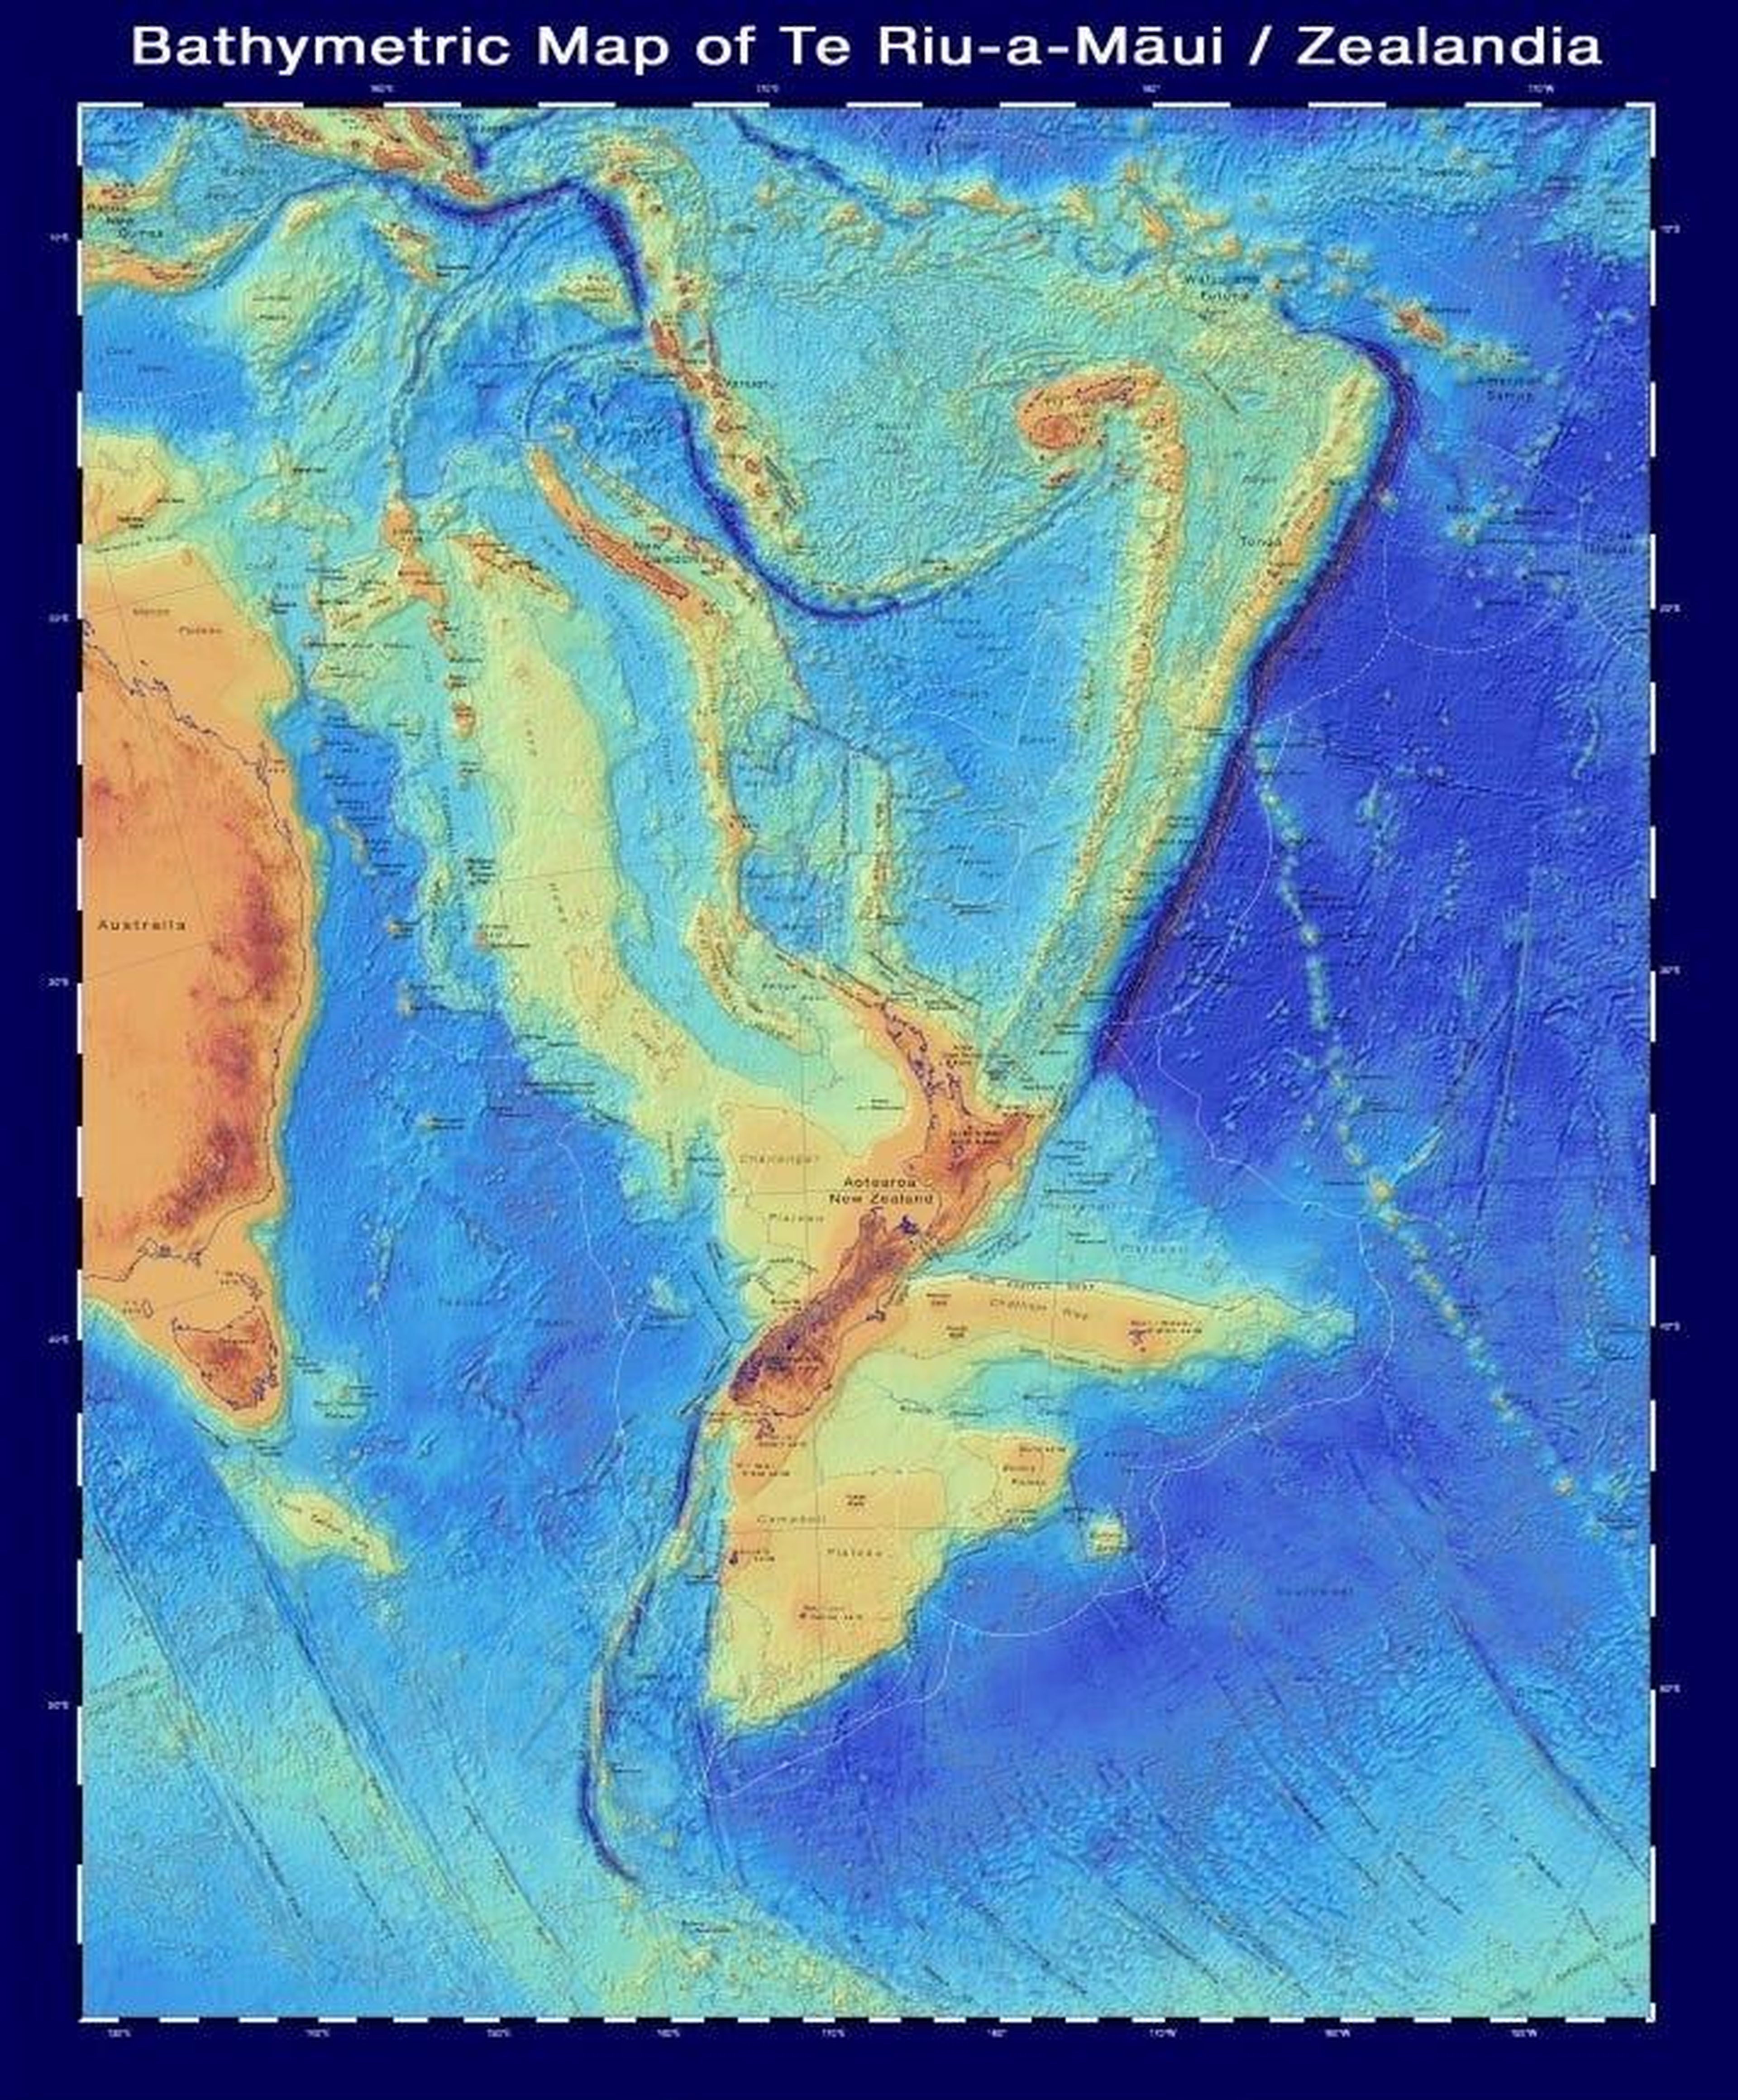 Un mapa batimétrico de Zealandia, que muestra la forma del continente bajo el agua.